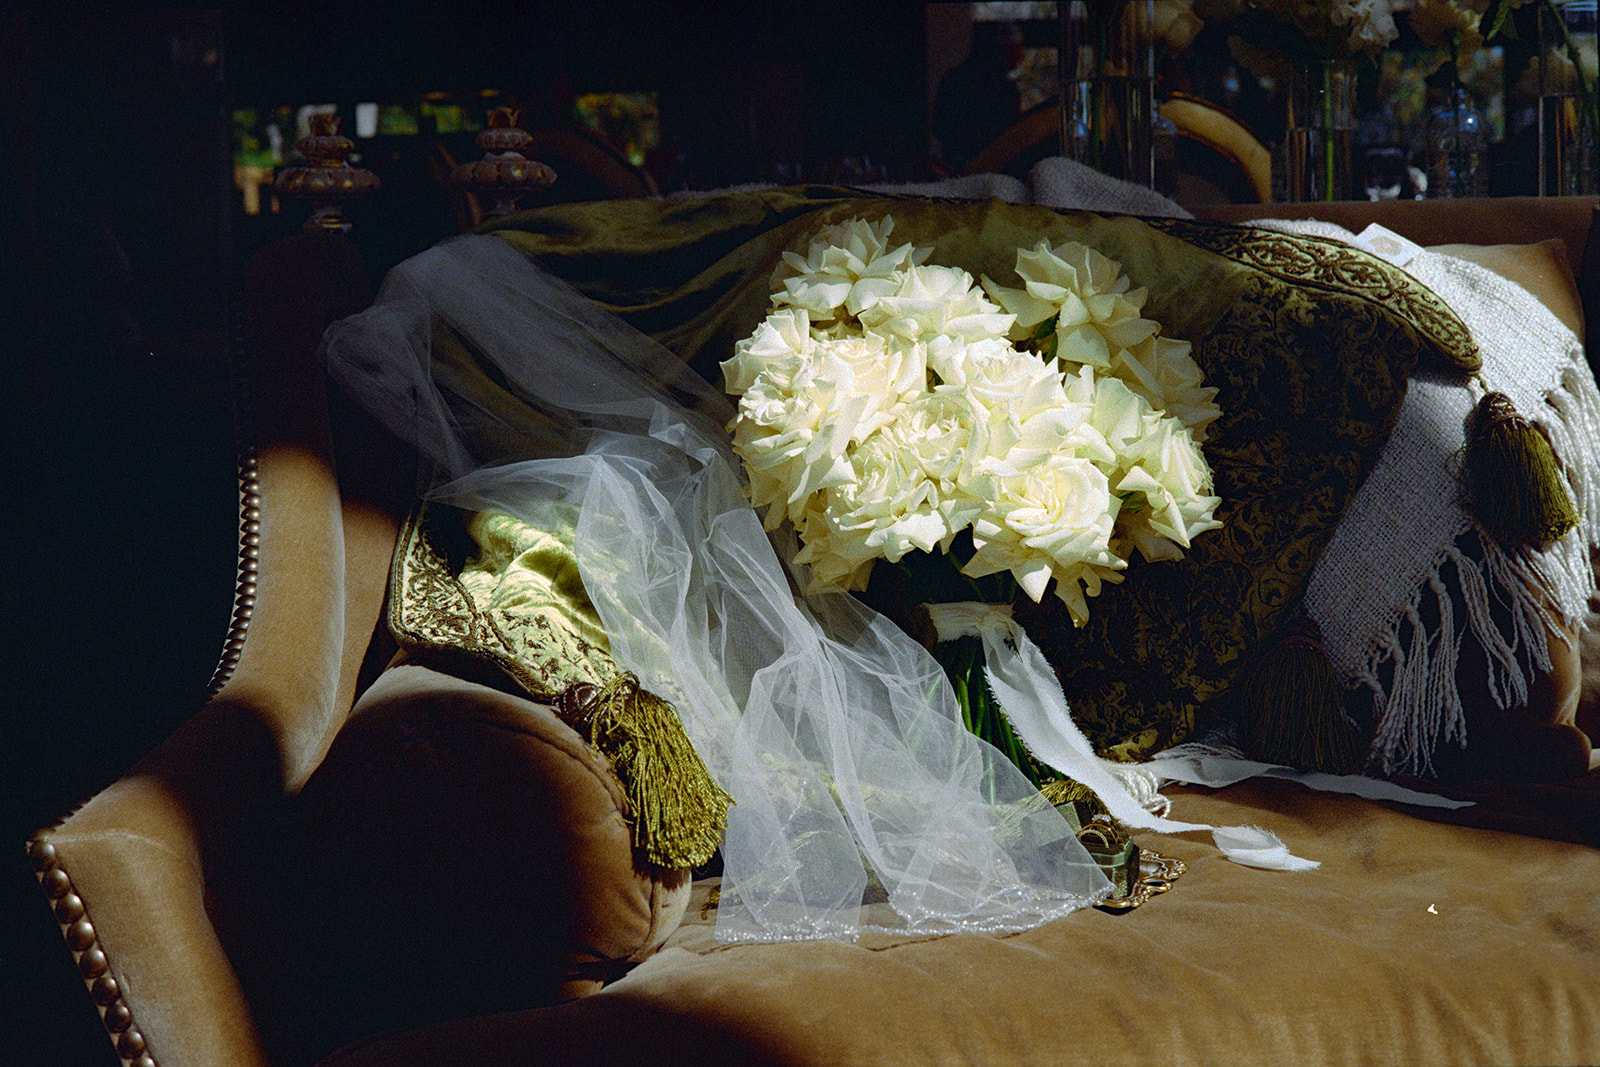 Film photograph of bridal bouquet